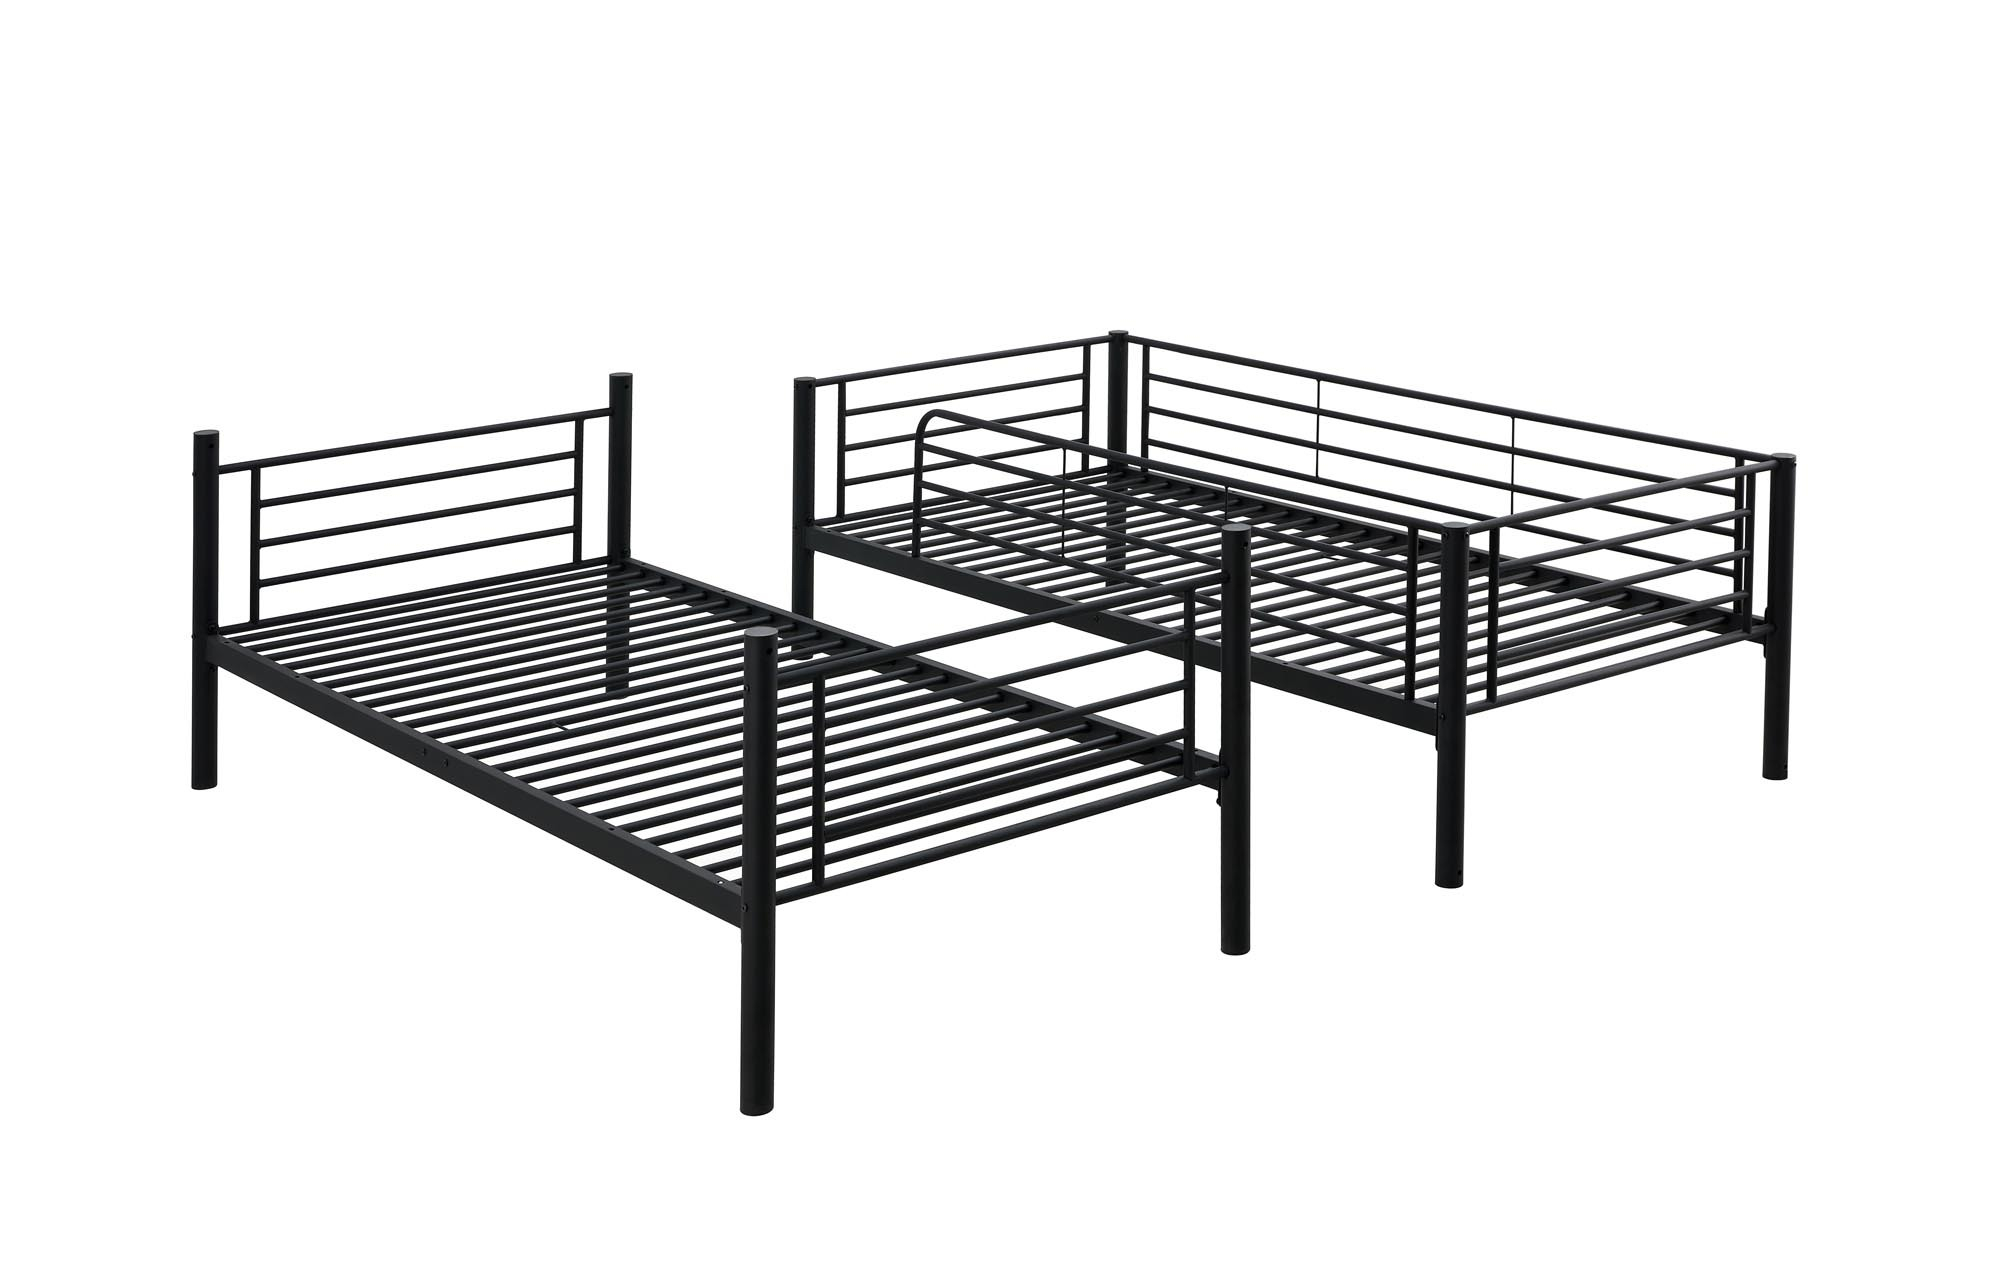 BUNKY łóżko piętrowe / opcja dwóch łóżek pojedynczych 90, czarny